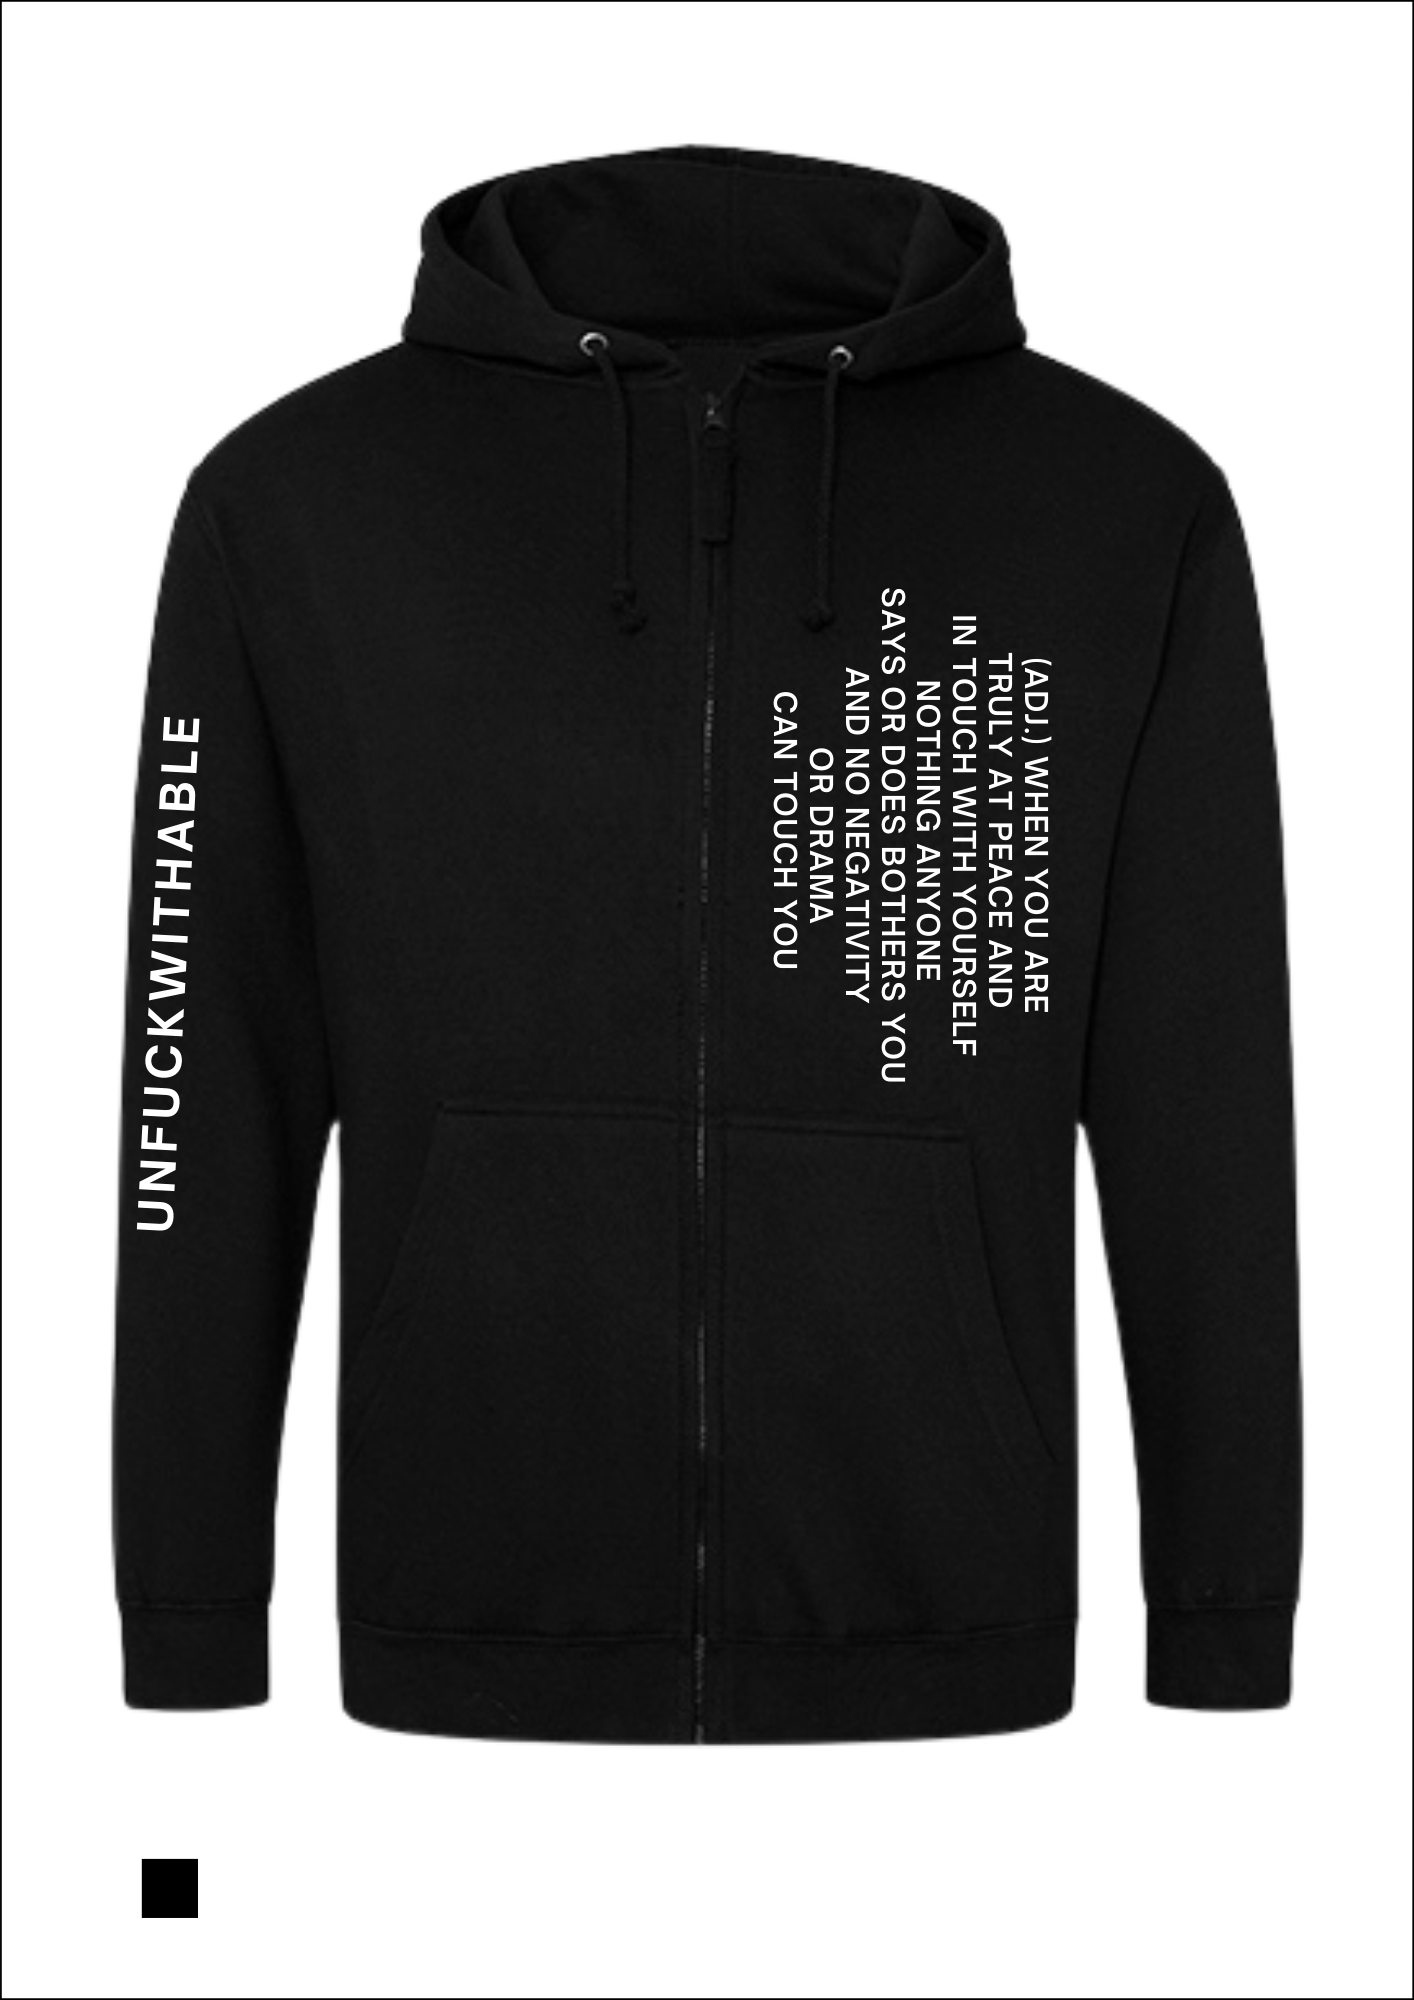 Unfuckwithable (E) - hoodie zip